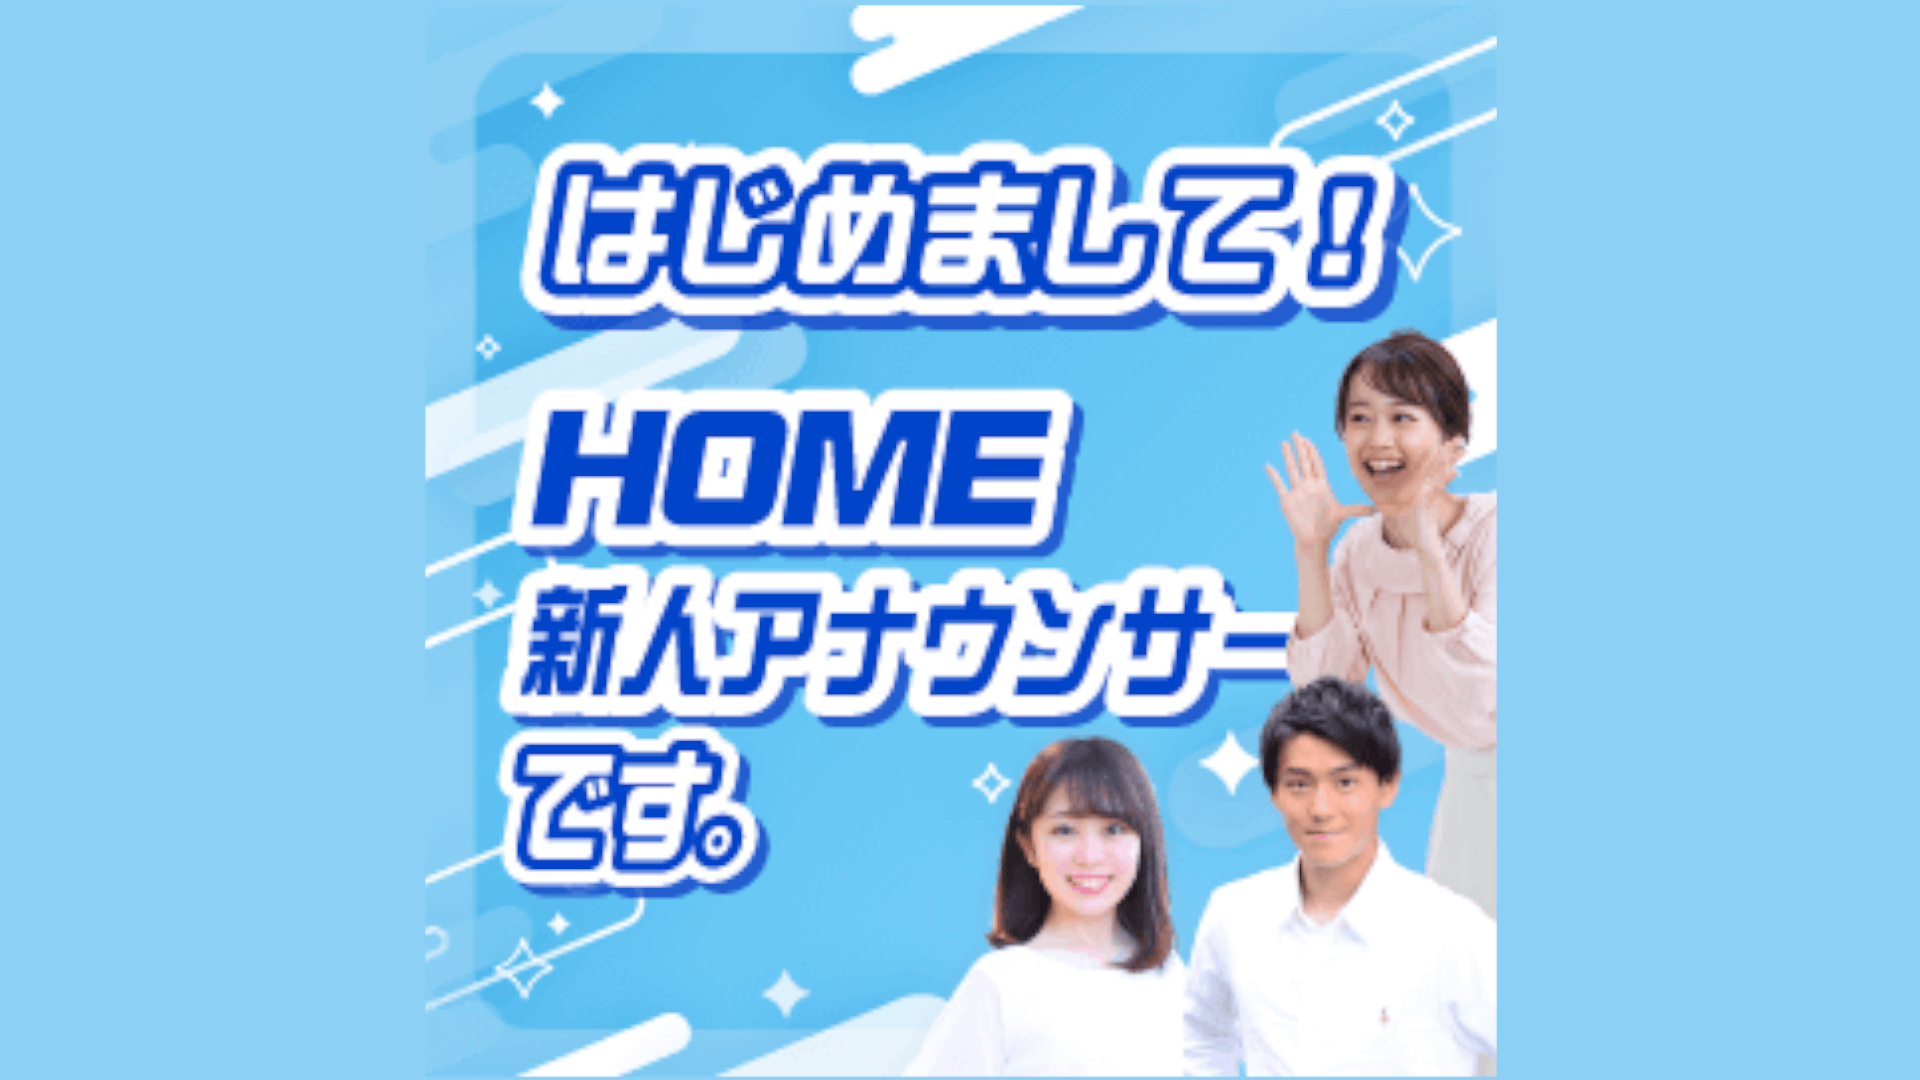 お知らせ アナウンサー Home広島ホームテレビ